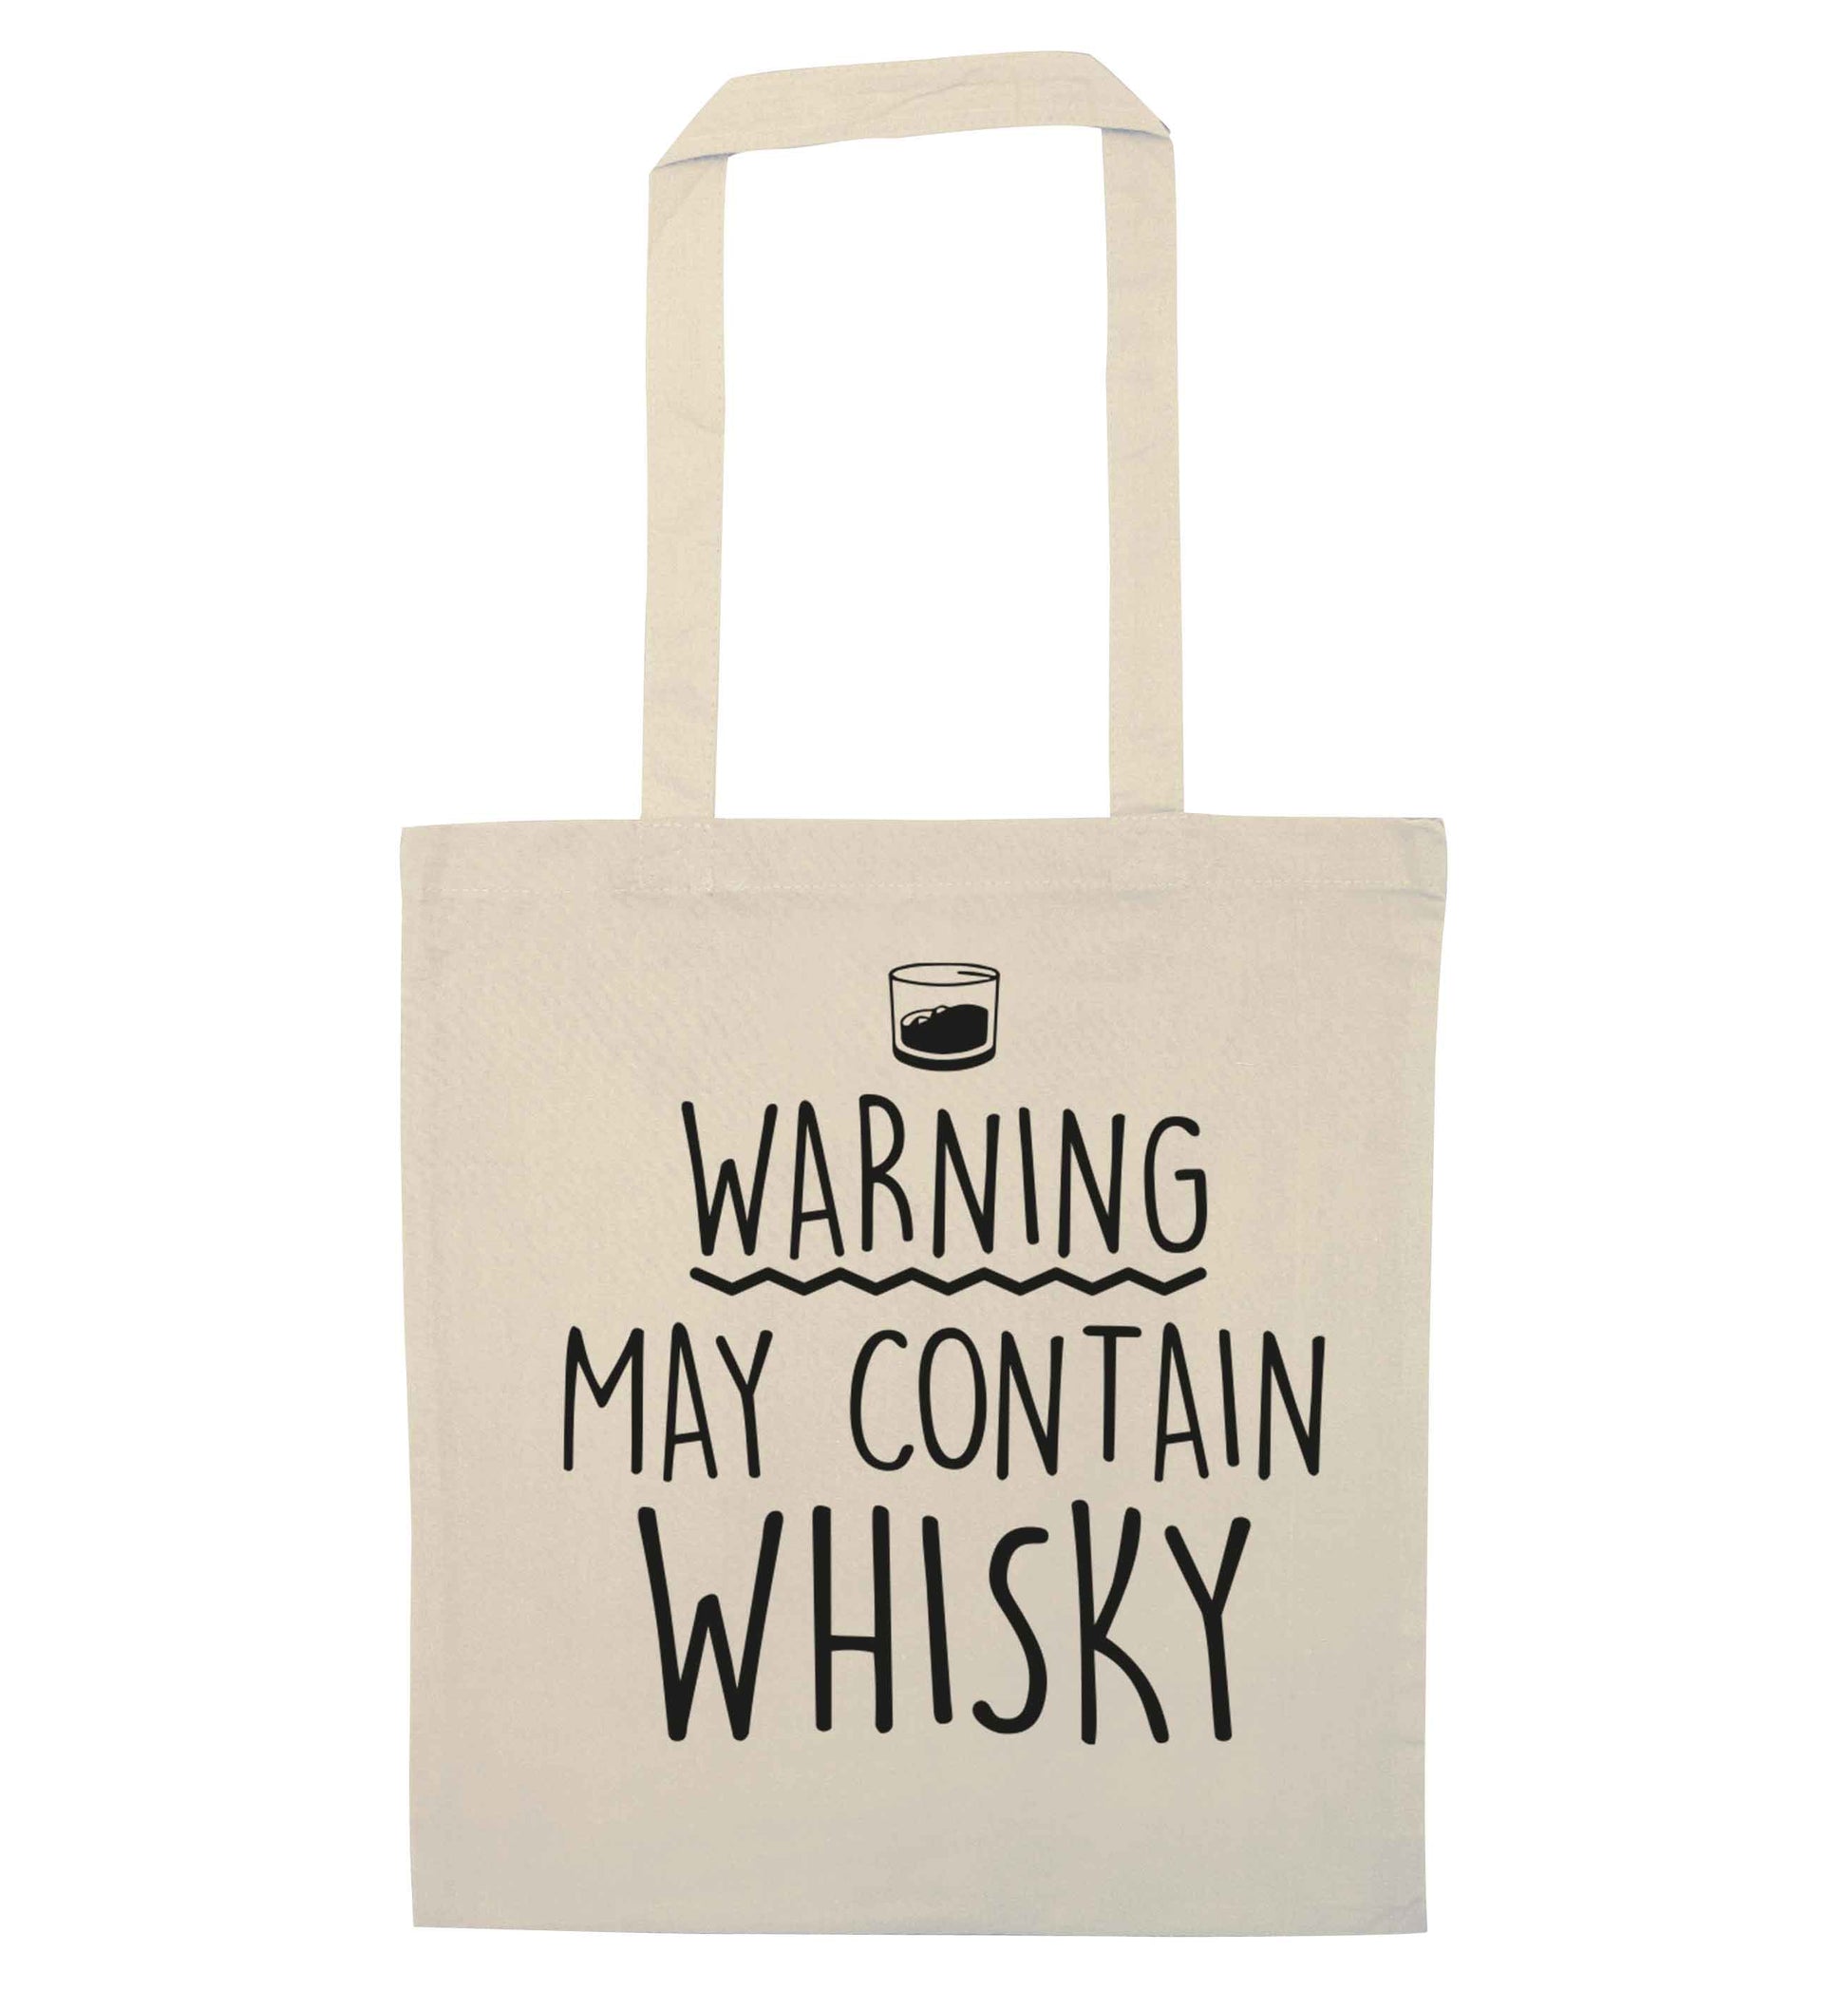 Warning may contain whisky natural tote bag